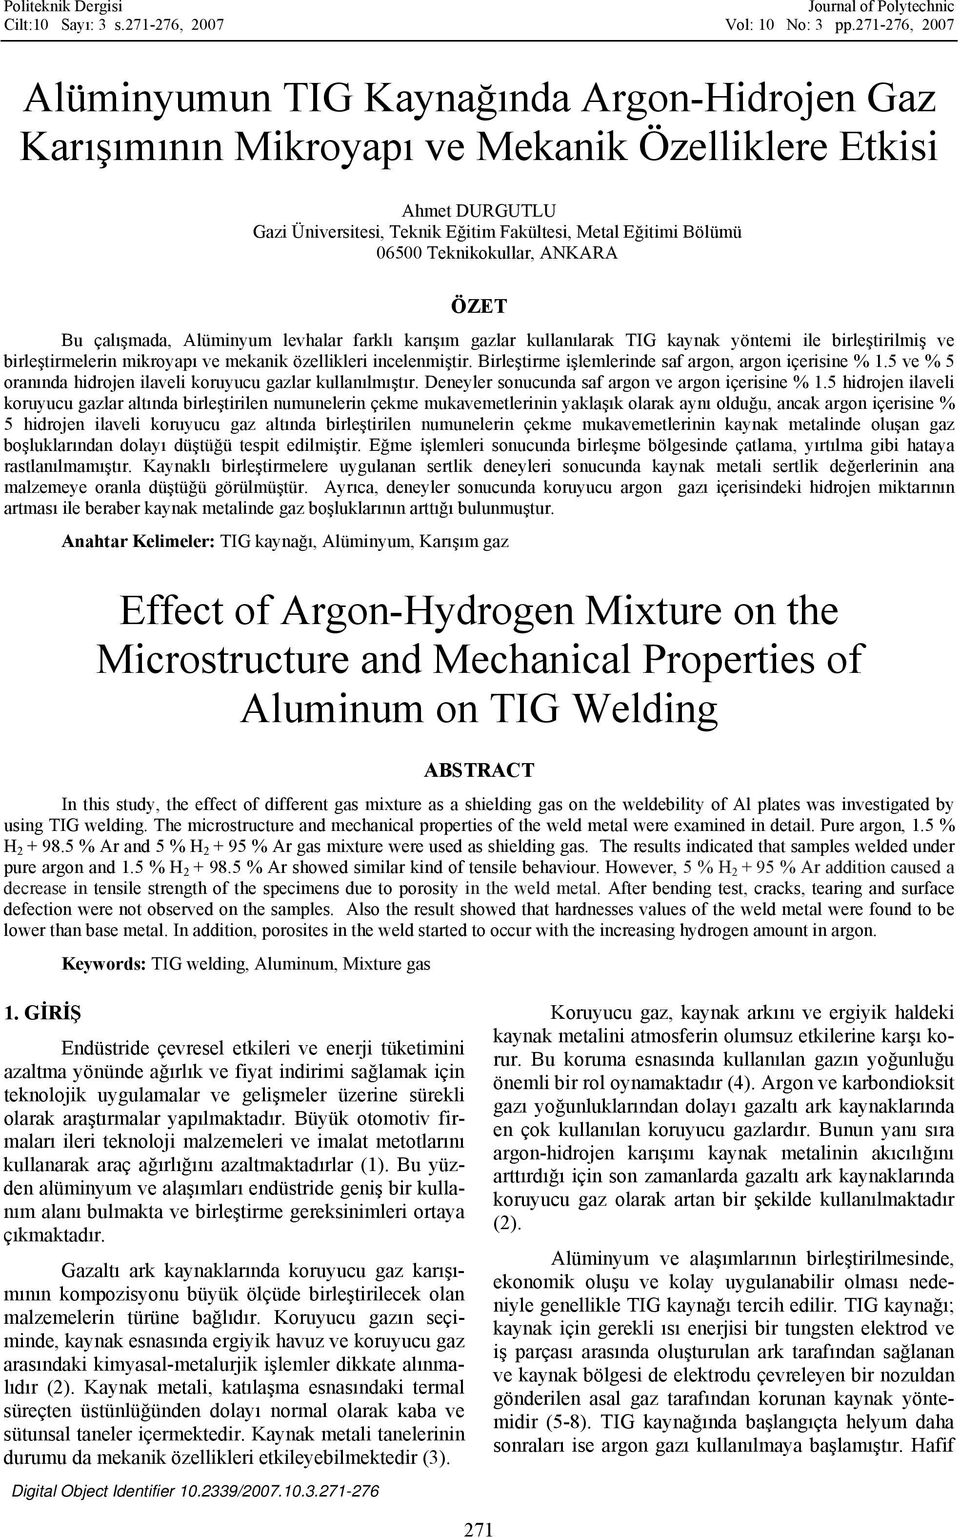 Teknikokullar, ANKARA ÖZET Bu çalışmada, Alüminyum levhalar farklı karışım gazlar kullanılarak TIG kaynak yöntemi ile birleştirilmiş ve birleştirmelerin mikroyapı ve mekanik özellikleri incelenmiştir.